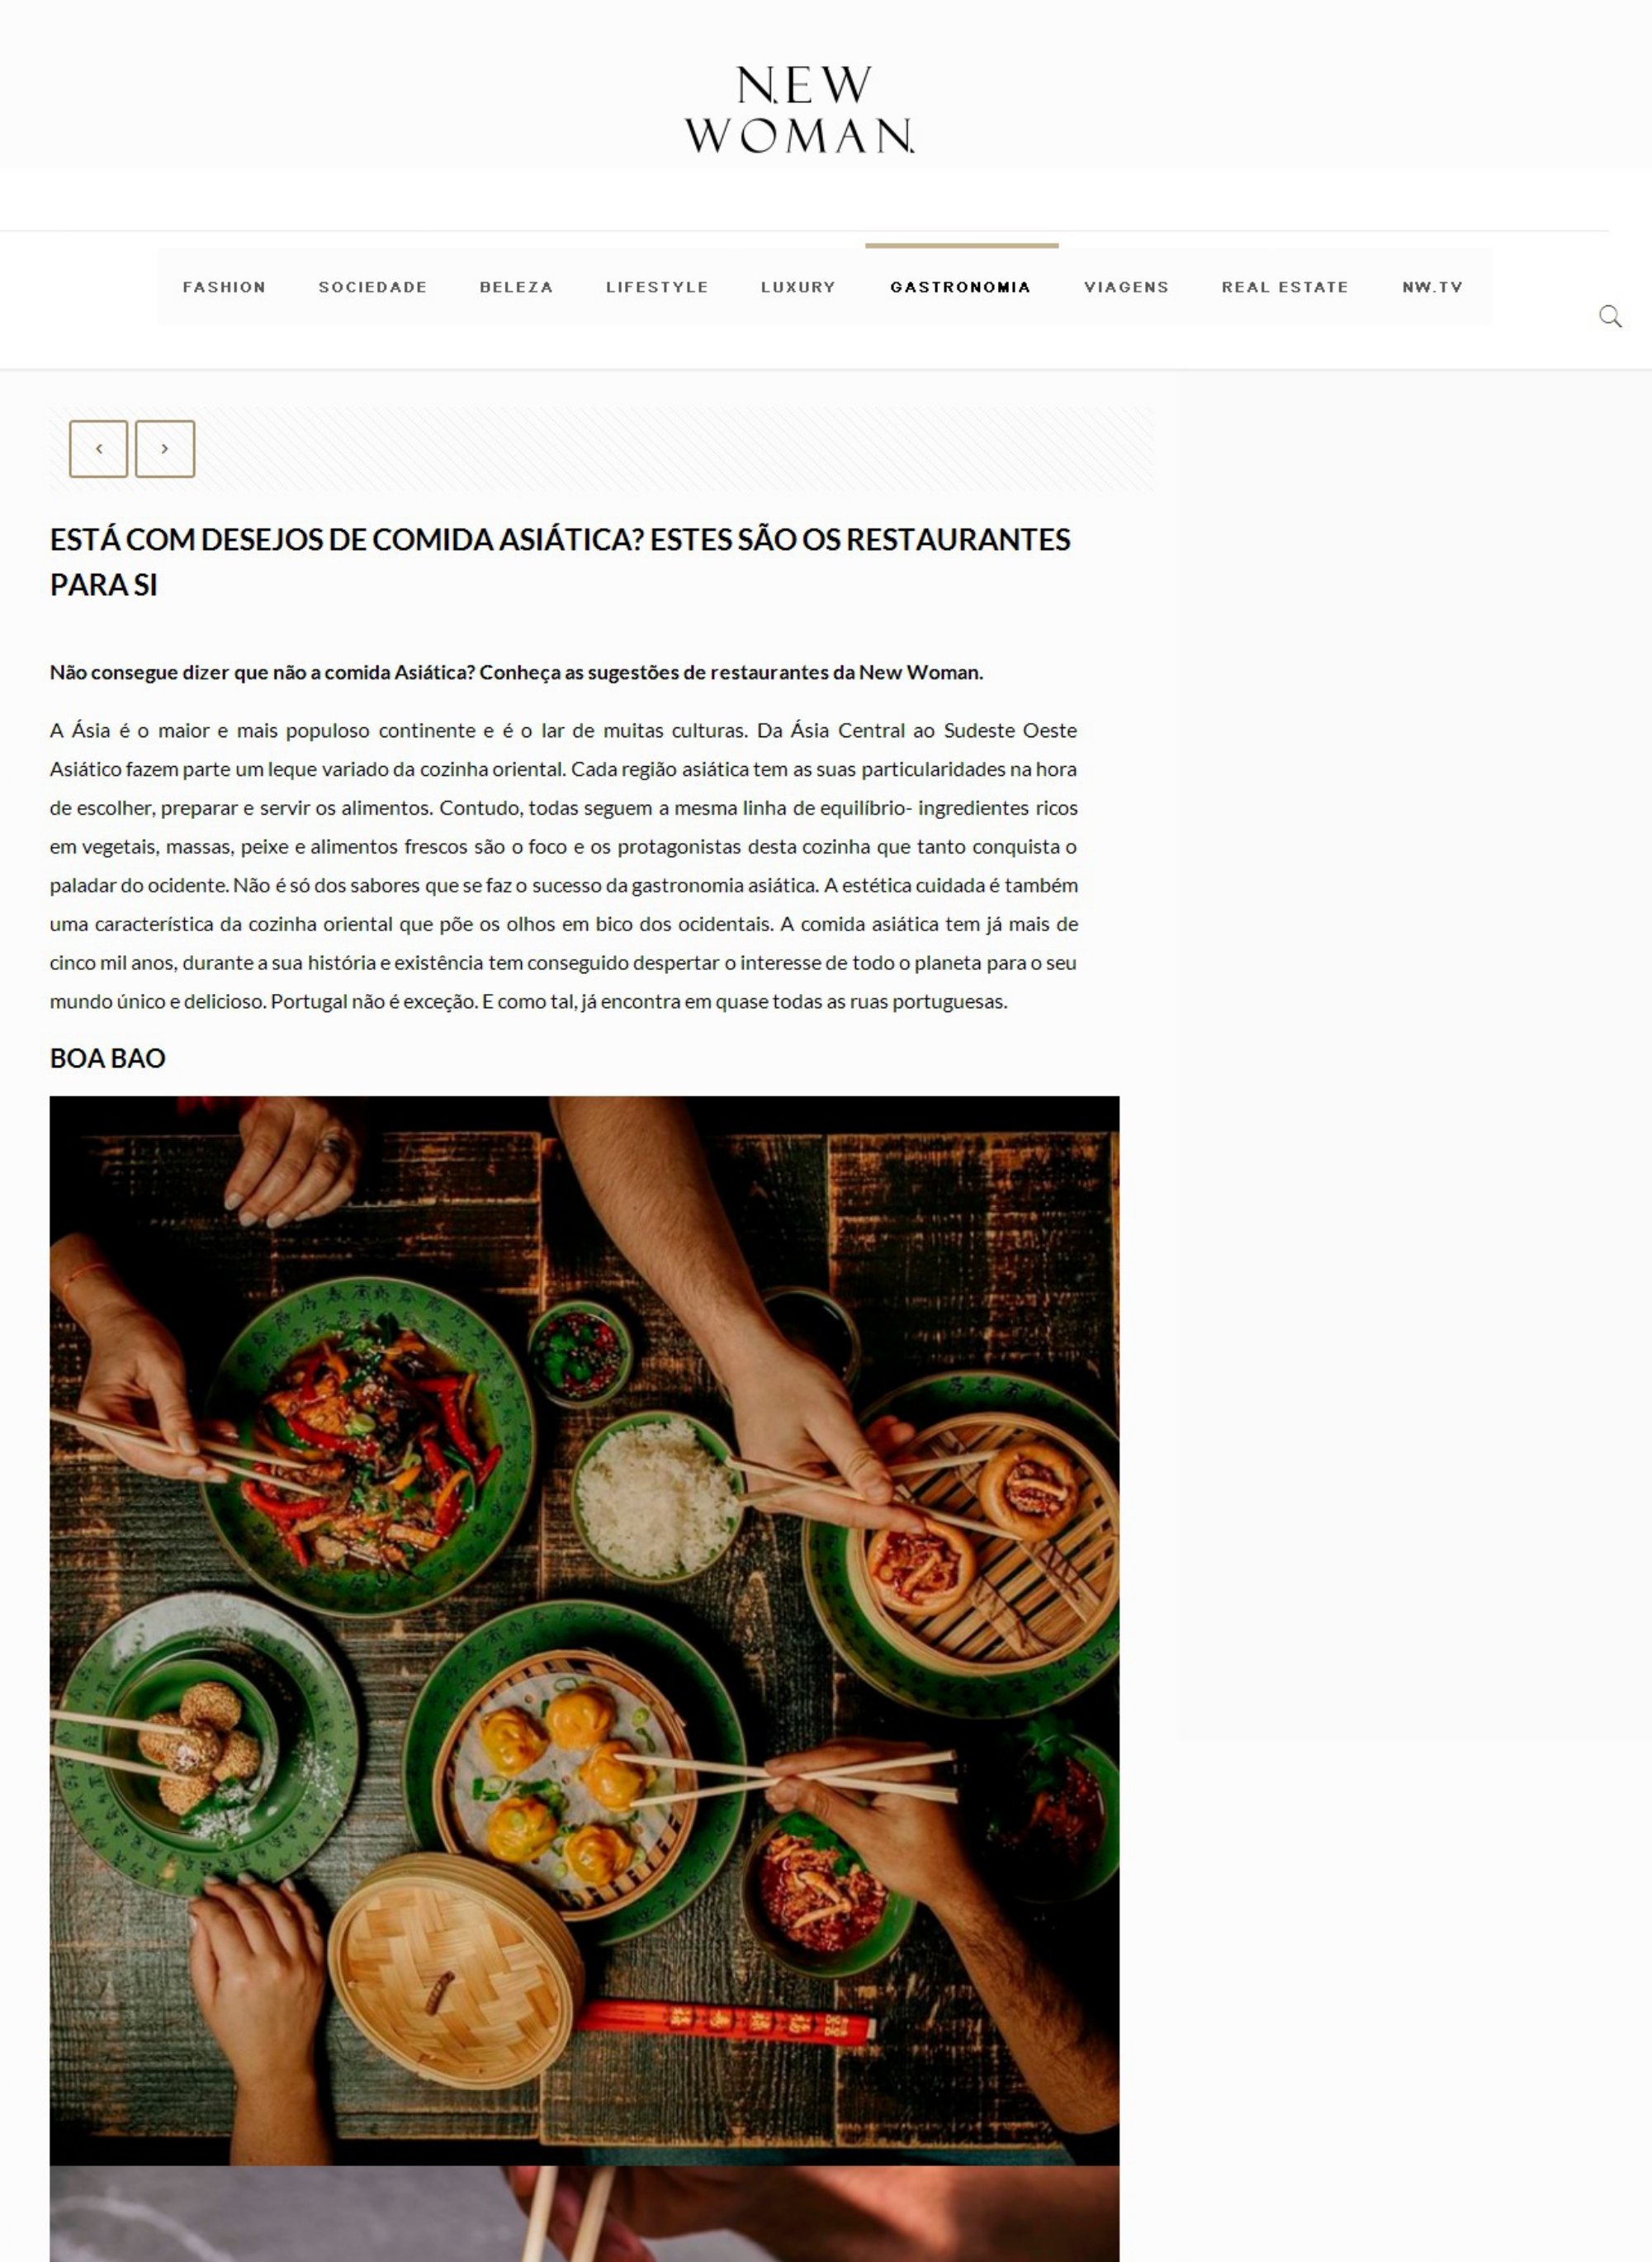 NewWoman Online_¿Tienes antojo de comida asiática? Estos son los restaurantes para usted_page-0001.jpg